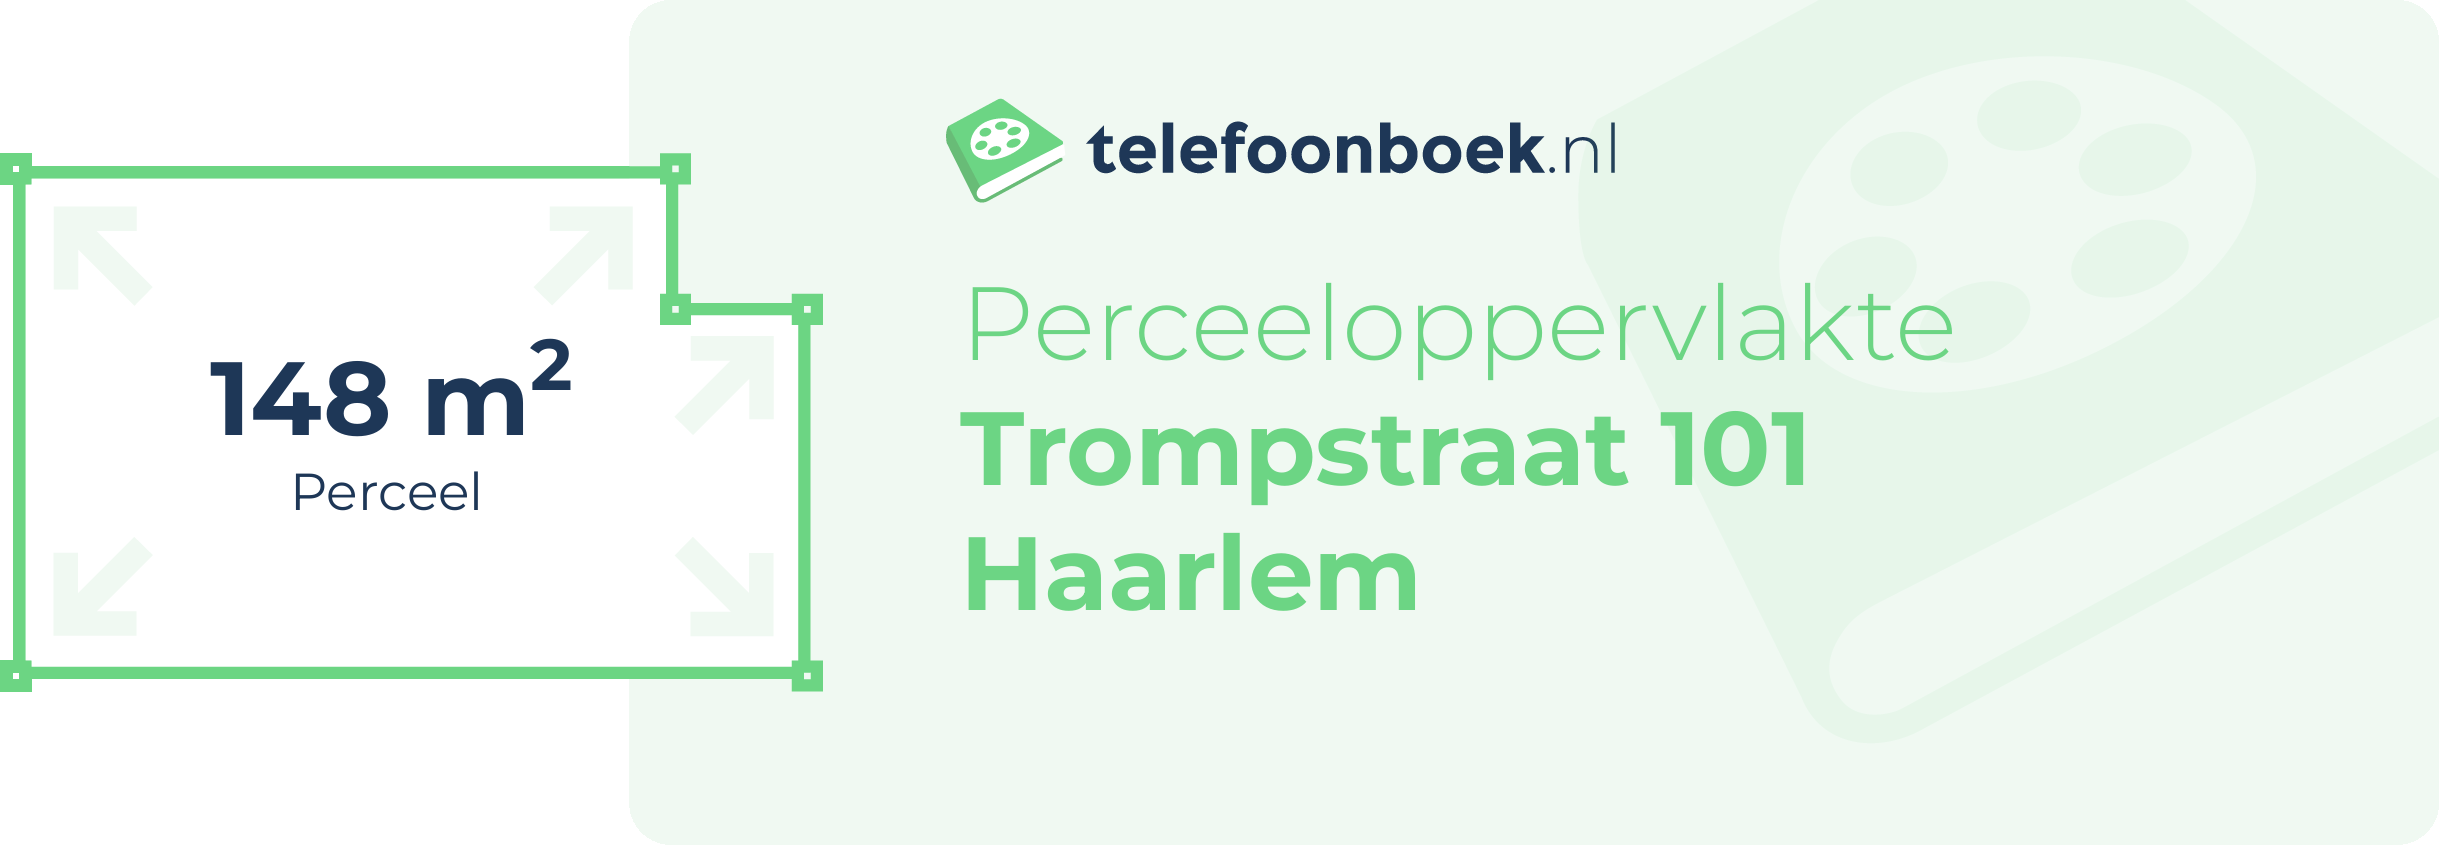 Perceeloppervlakte Trompstraat 101 Haarlem